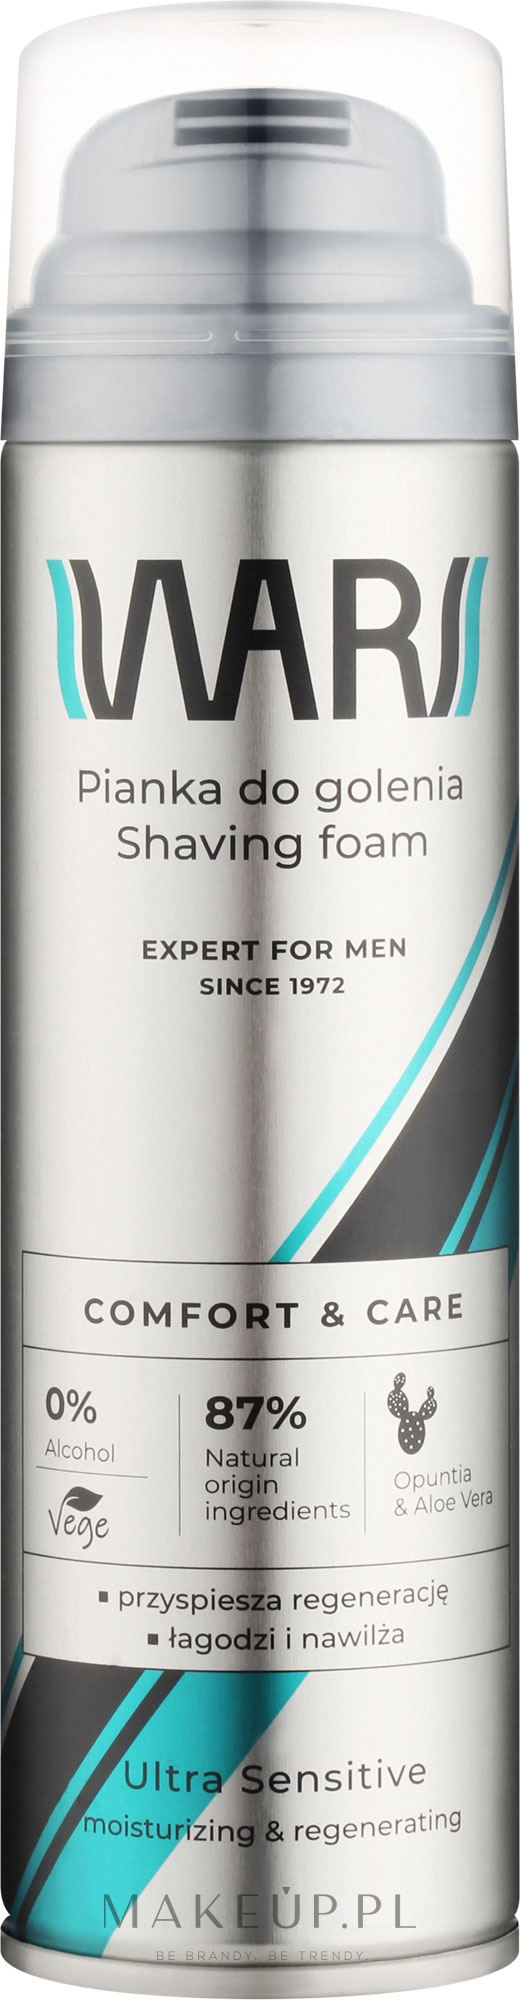 Pianka do golenia dla mężczyzn Opuncja i aloes - Wars Expert For Men Comfort & Care  — Zdjęcie 200 ml